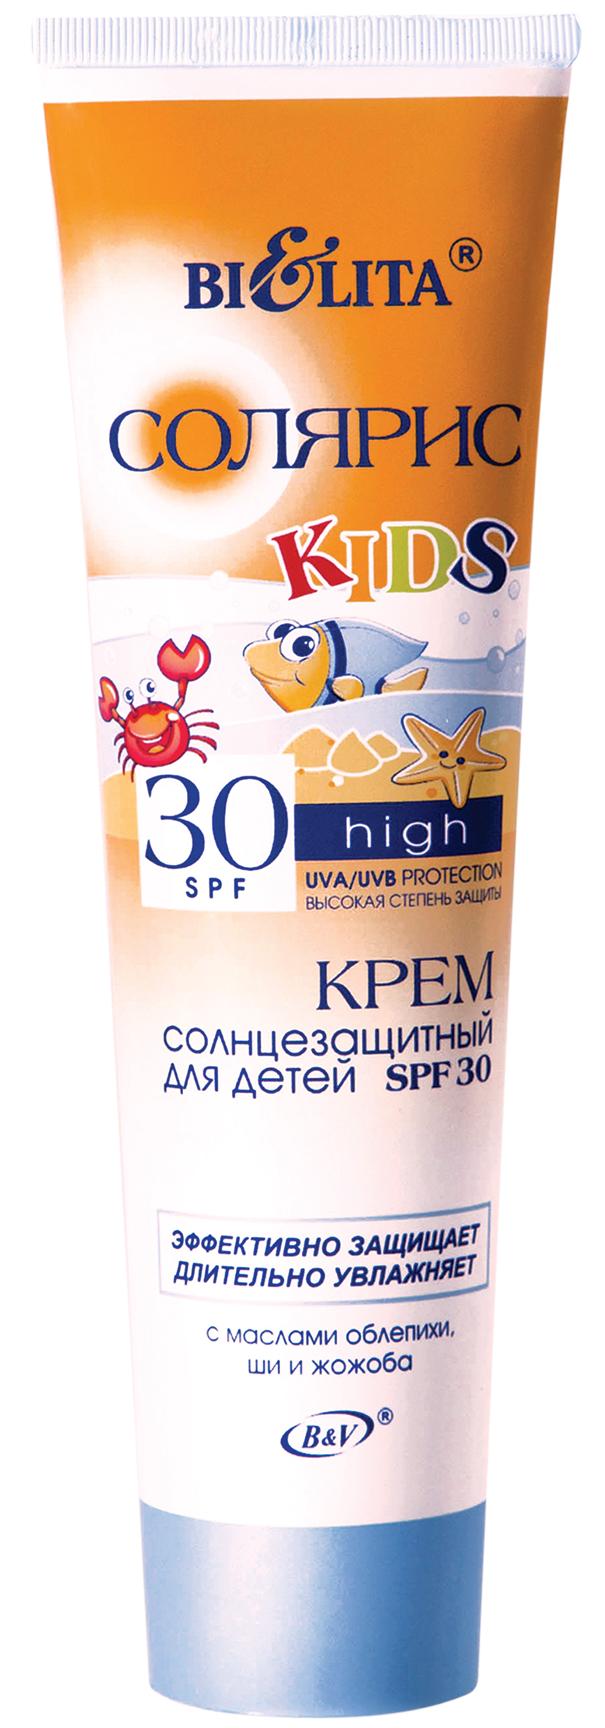 Крем для детей солнцезащитный SPF30 солярис, 100мл  Belita